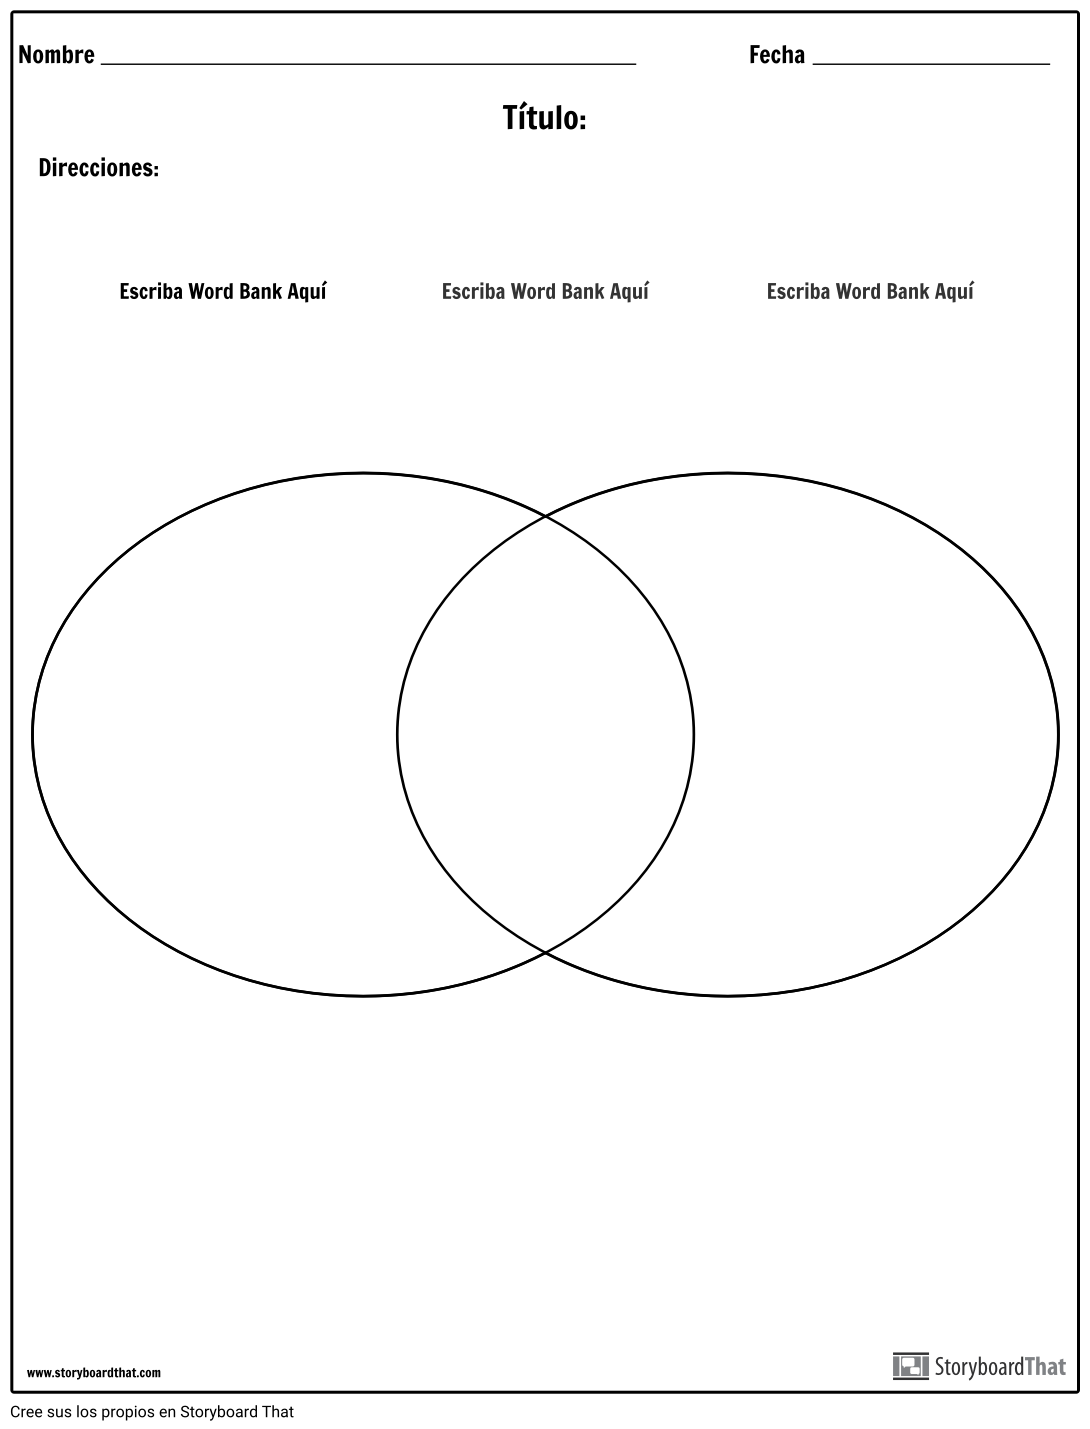 Creador de Diagramas de Venn — Hojas de Trabajo de Diagramas de Venn |  StoryboardThat